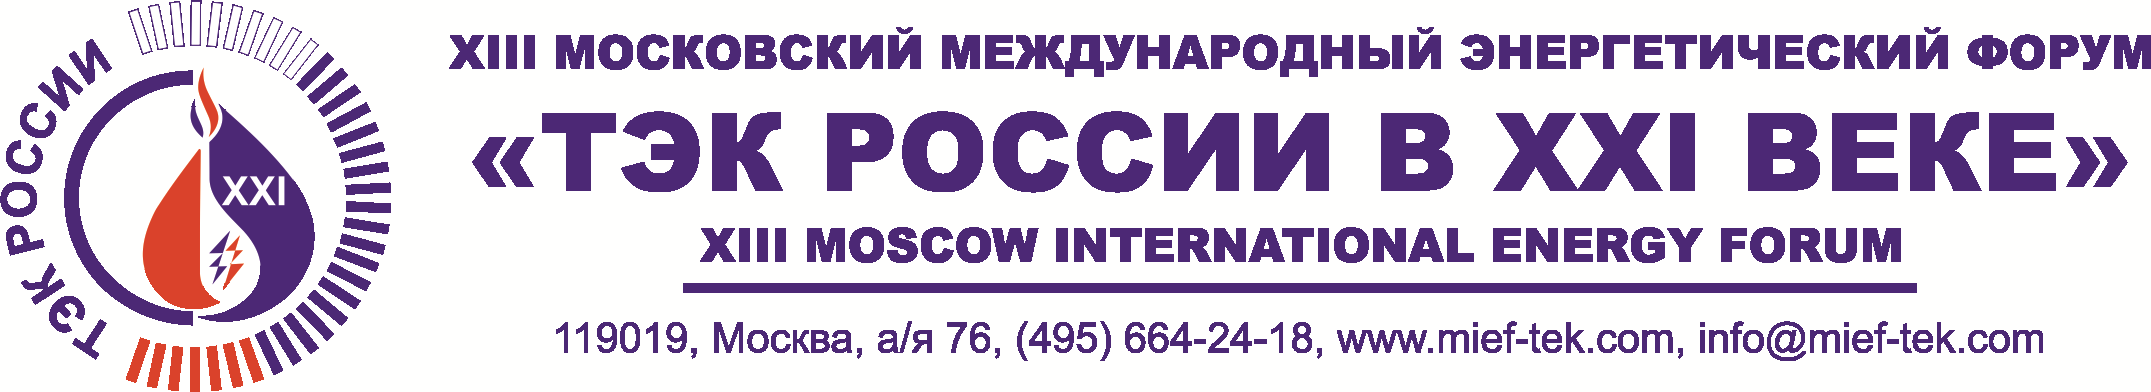  XVIII Московский международный энергетический форум «ТЭК России в XXI веке» состоится 23-24 апреля 2020 года - фото 1